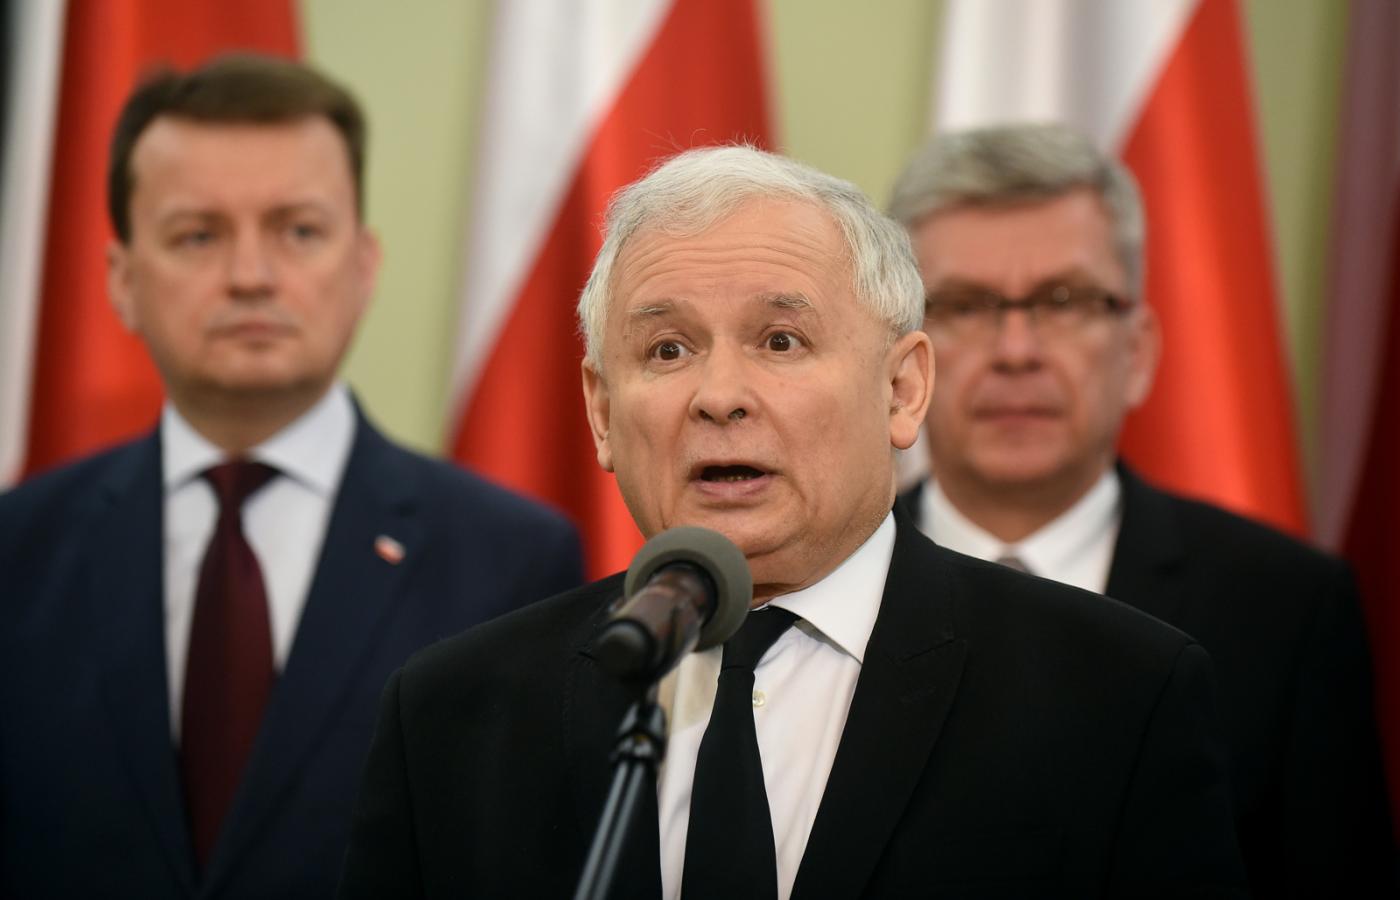 Ugrupowanie Kaczyńskiego zawsze zabiegało o przyjęcie jego pozornie demokratycznej mimikry za rzeczywiste oblicze.